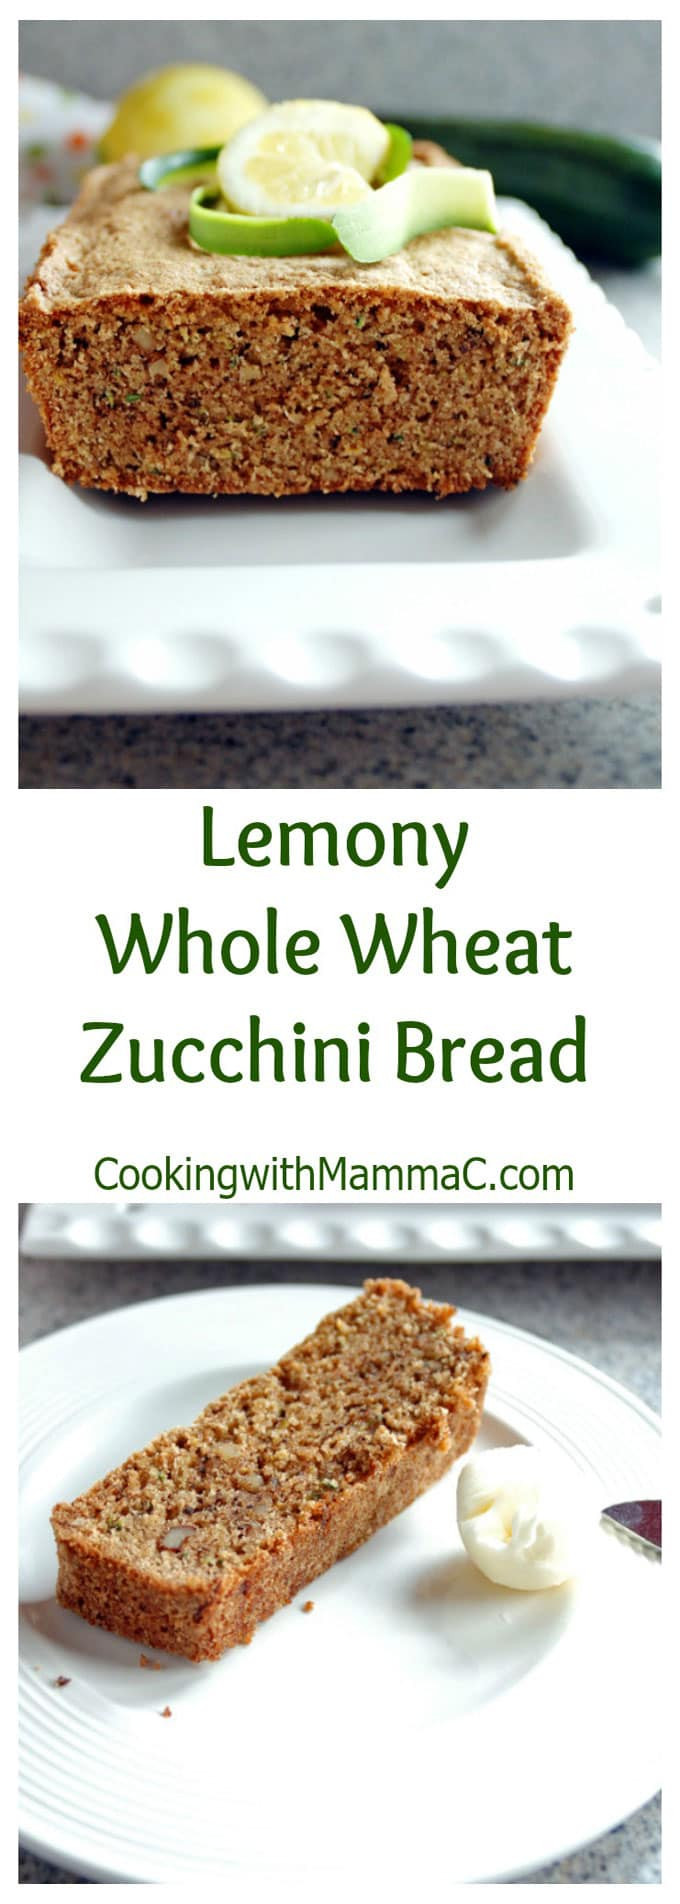 Whole Wheat Zucchini Bread
 Lemony Whole Wheat Zucchini Bread